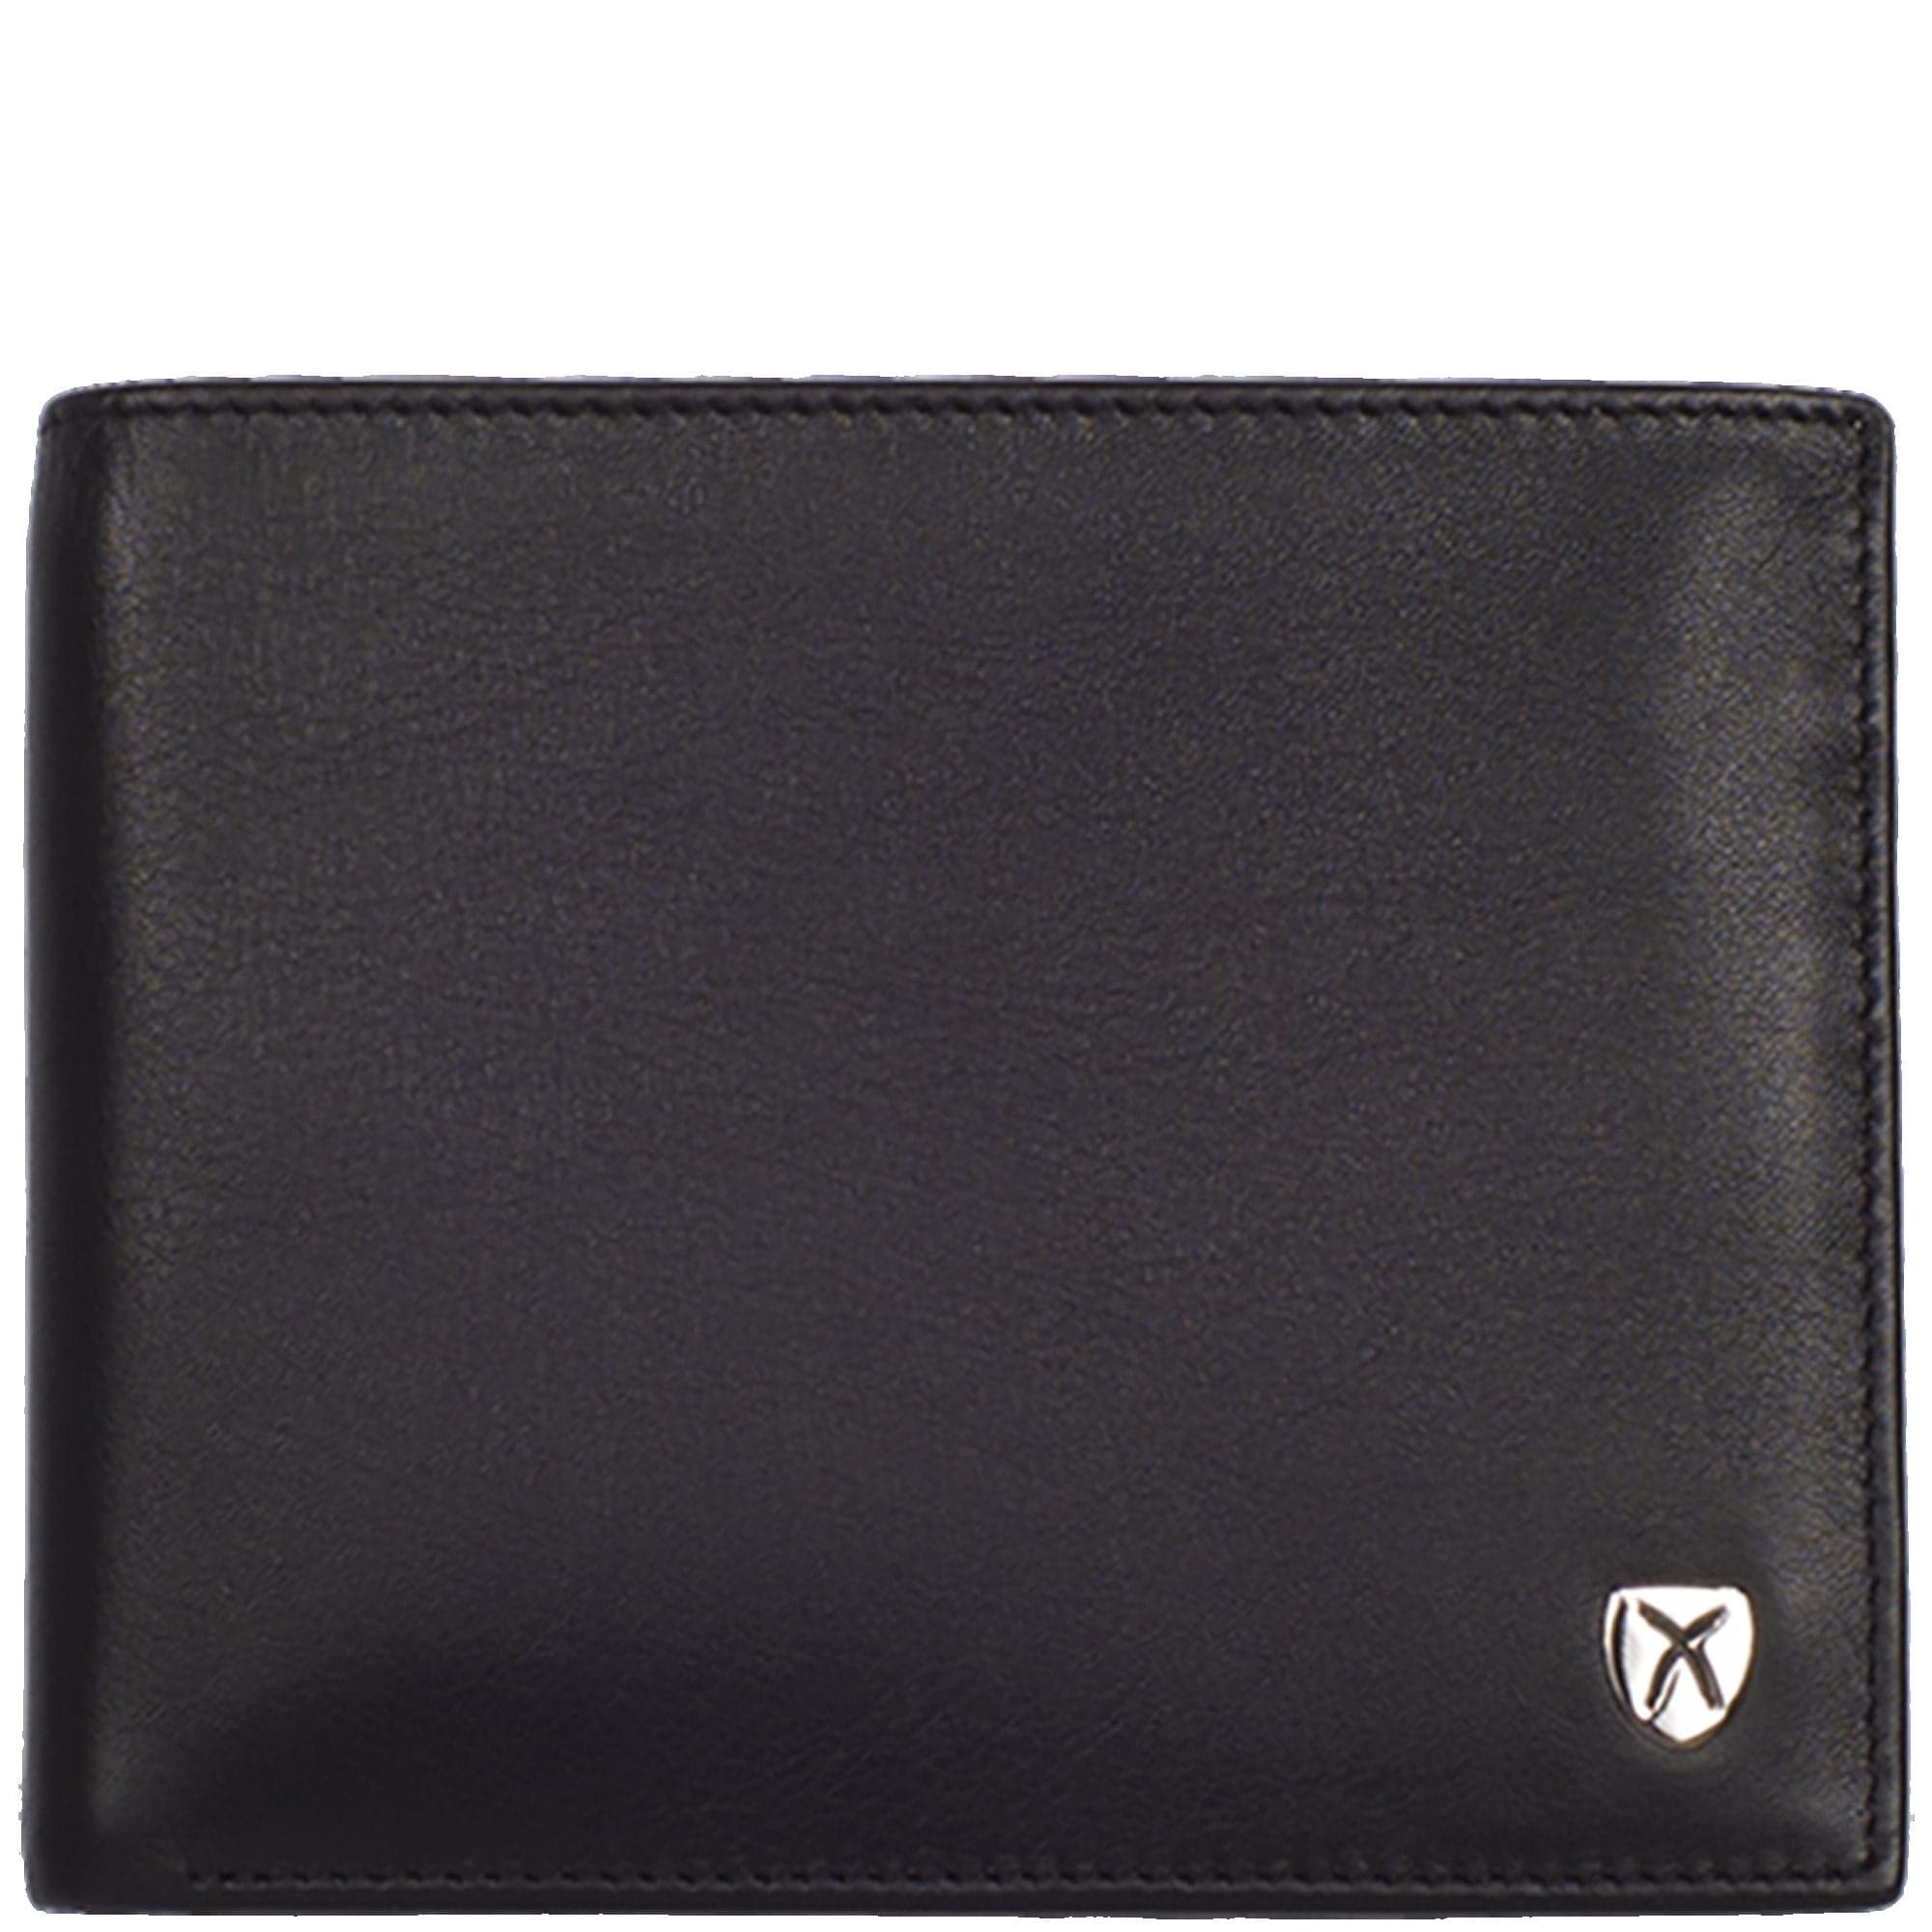 Geldbörse Portemonnaie Leder schwarz Standardformat